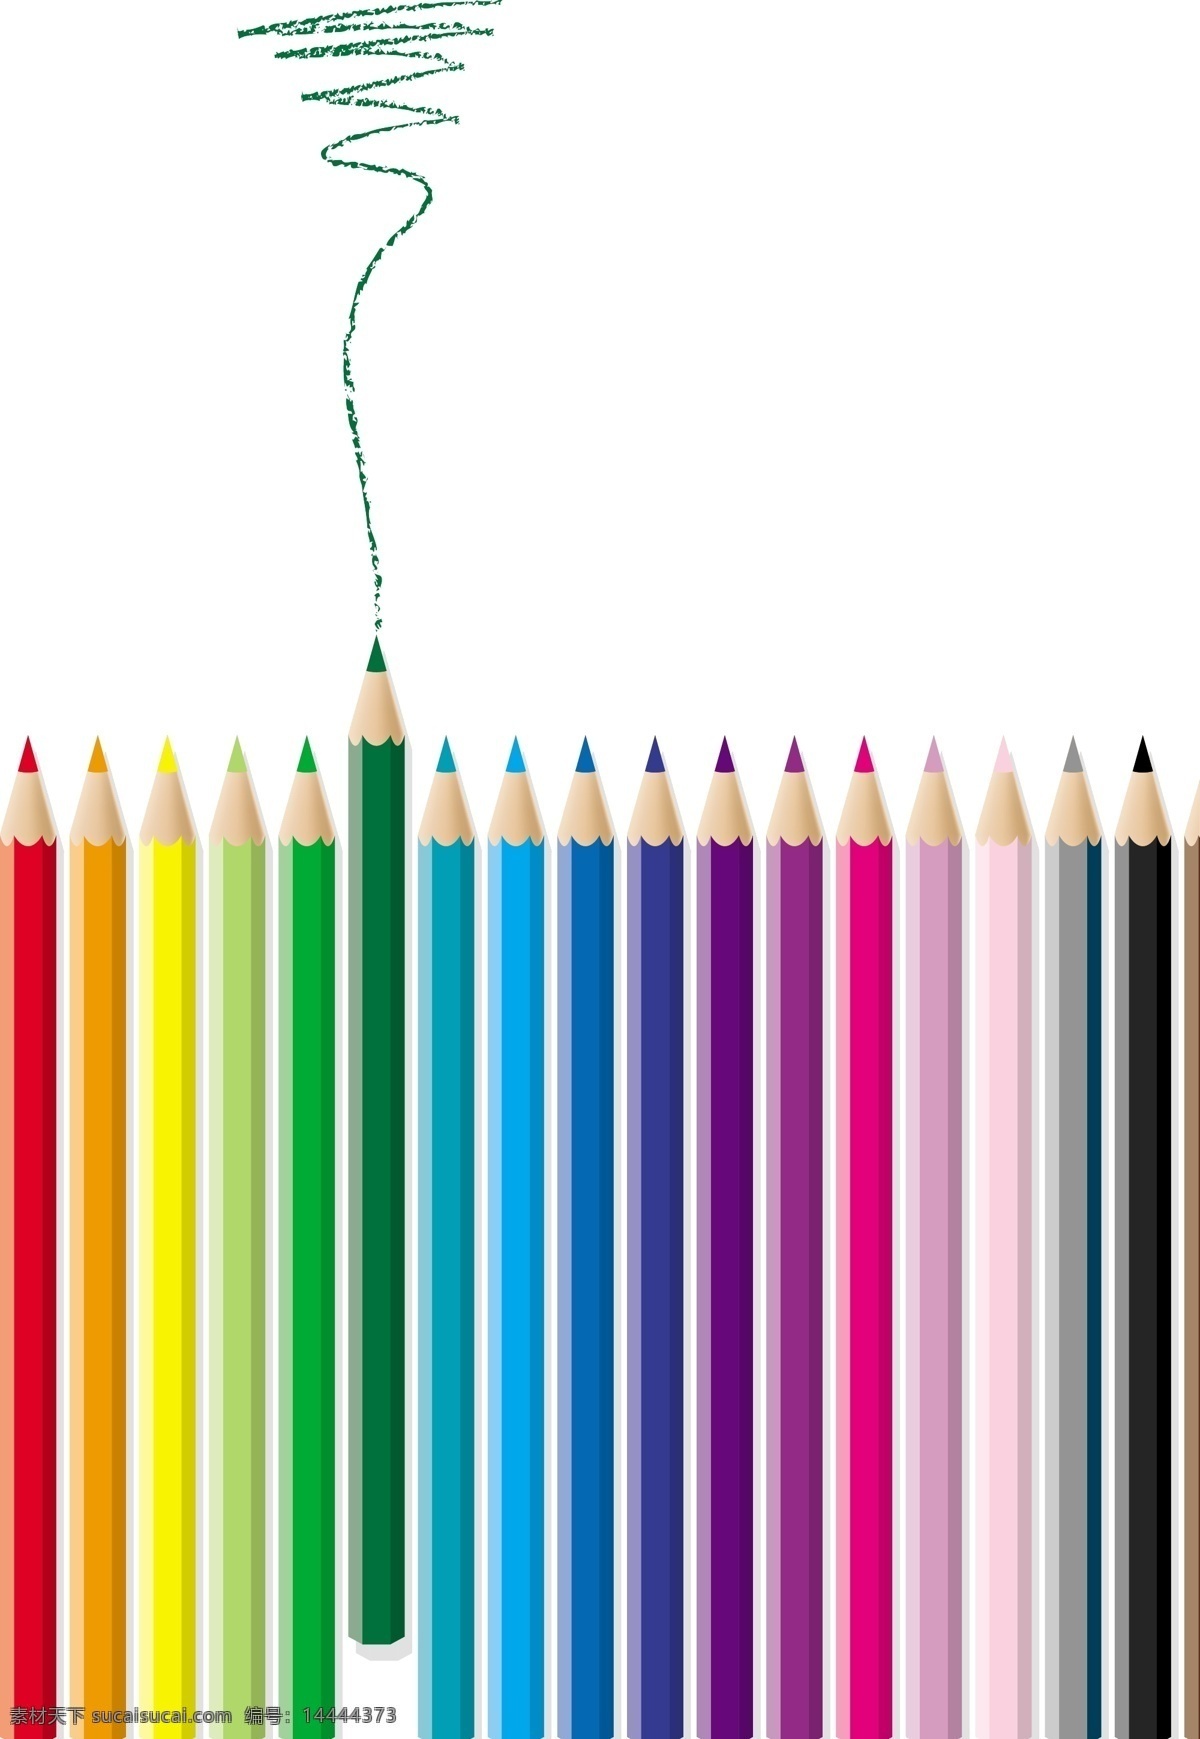 彩色 铅笔 彩色铅笔 铅笔矢量 矢量花纹 矢量素材 矢量图 矢量图标 矢量图库 彩色铅笔素材 矢量 花纹花边